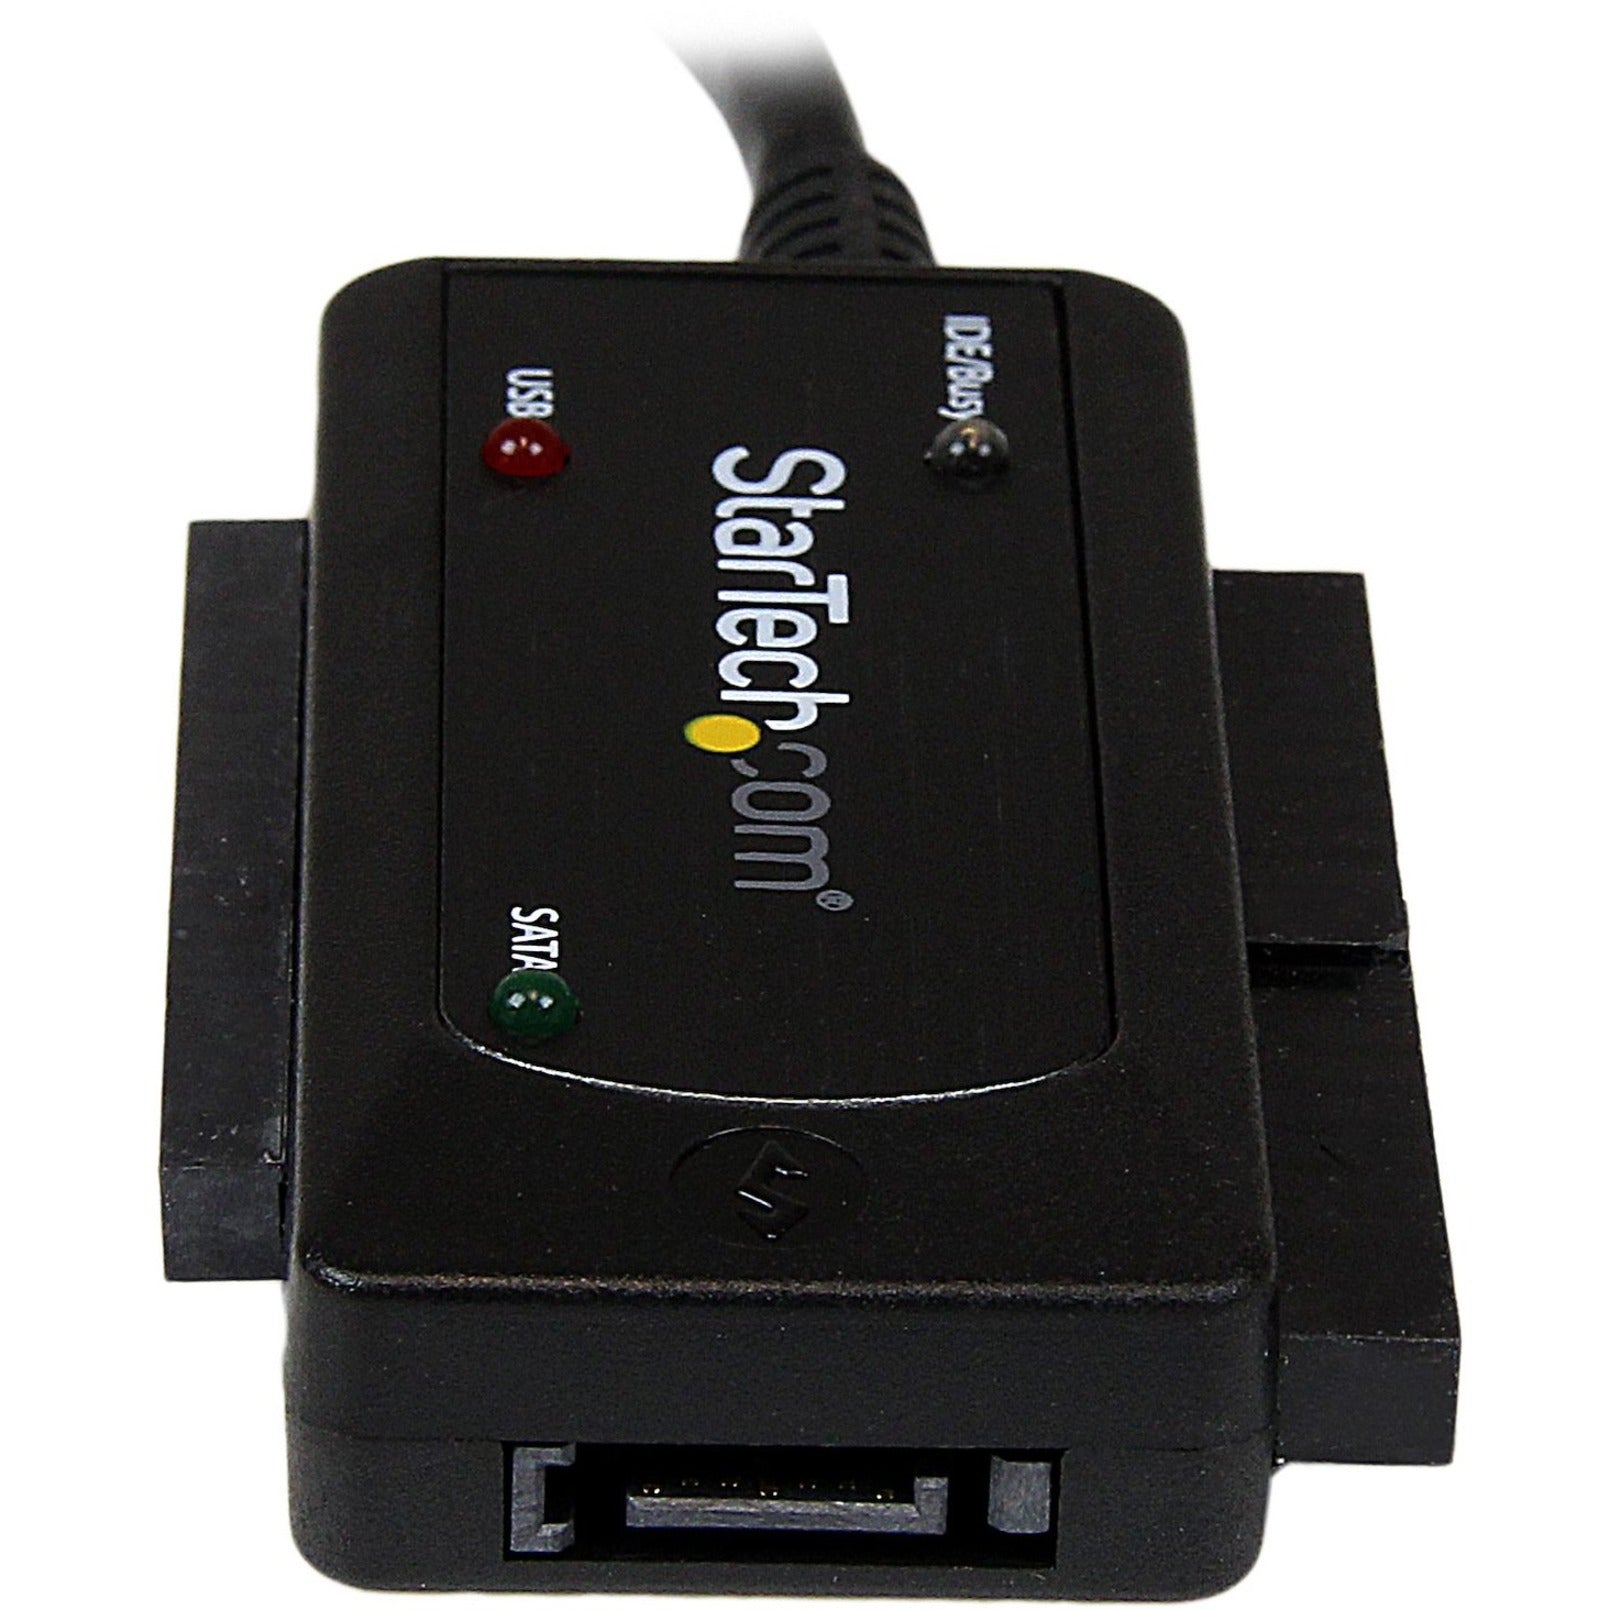 StarTech.com USB3SSATAIDE USB 3.0 to SATA or IDE Hard Drive Adapter Converter High-Speed Data Transfer  ブランド名: スタートレック ドットコム USB3SSATAIDE USB 3.0 を SATA または IDE ハードドライブアダプター変換器、高速データ転送